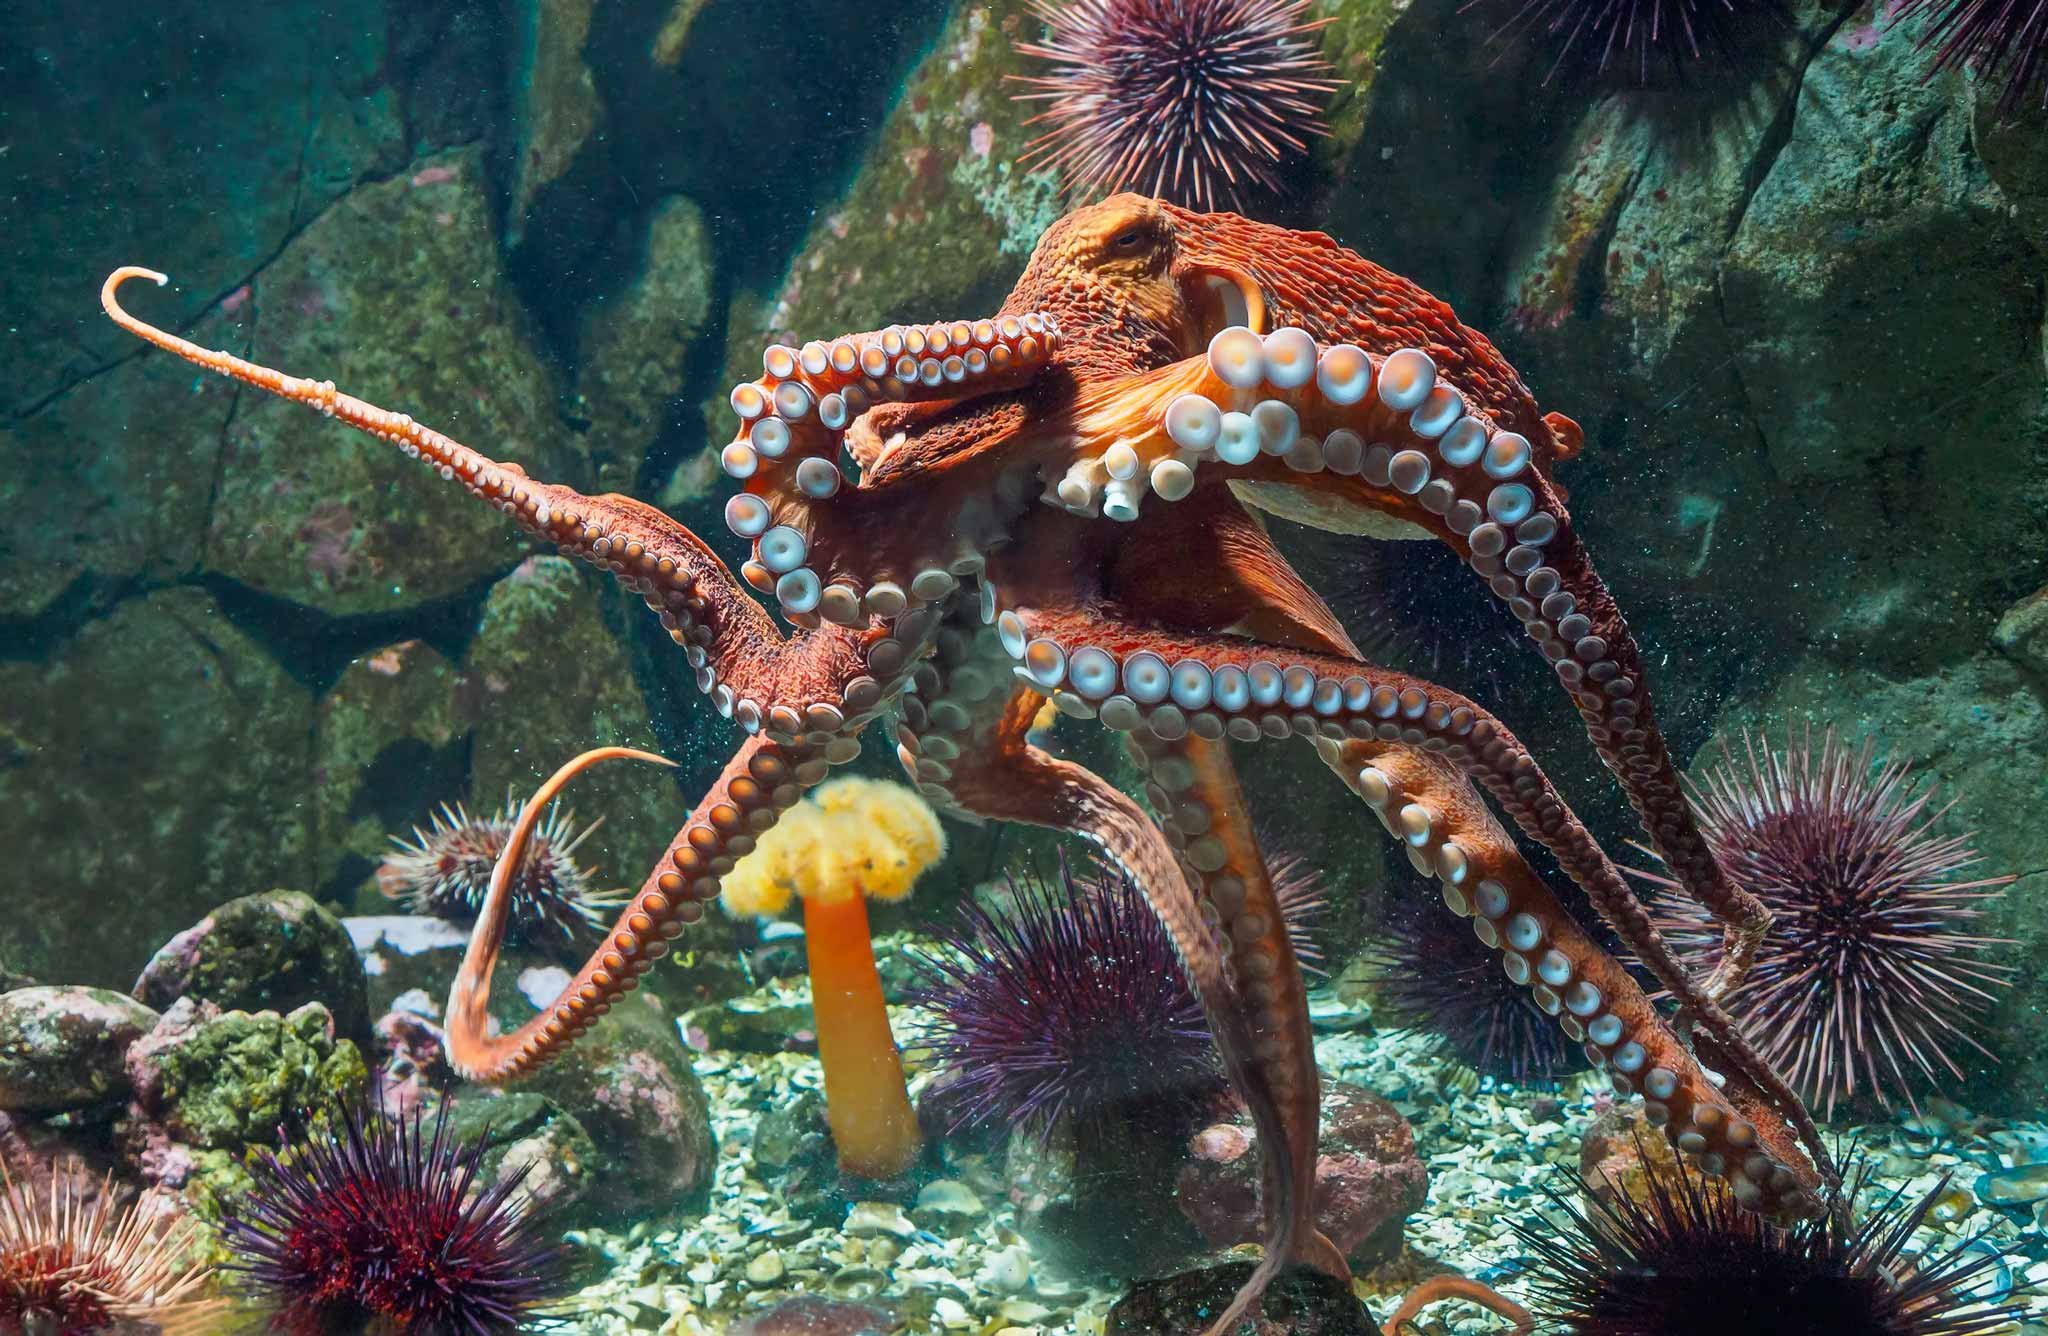 Oktopus und Seeigel gehören zu den größten Delikatessen des Meeres. Während das Tiefkühlen die Konsistenz des Stacheltiers ruiniert, wird der Oktopus dadurch nur zarter.